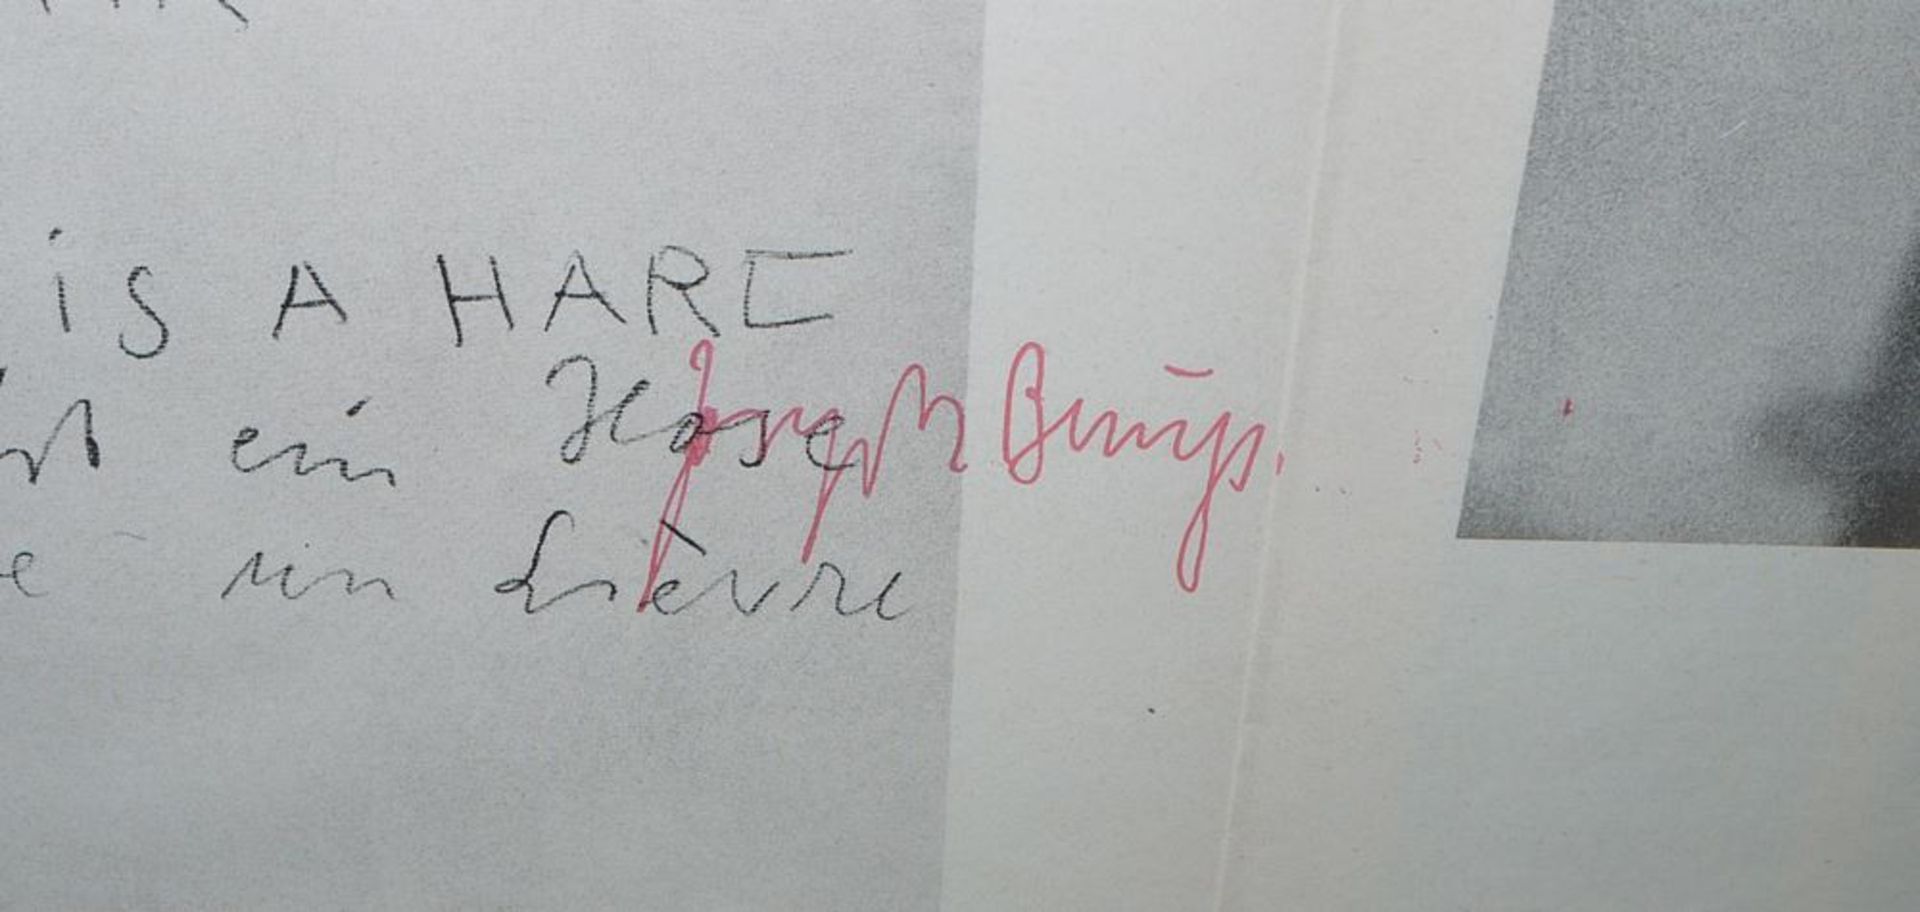 Joseph Beuys, signierte Zeitung "Pour" aus den 1970er Jahren, gerahmt - Image 2 of 2